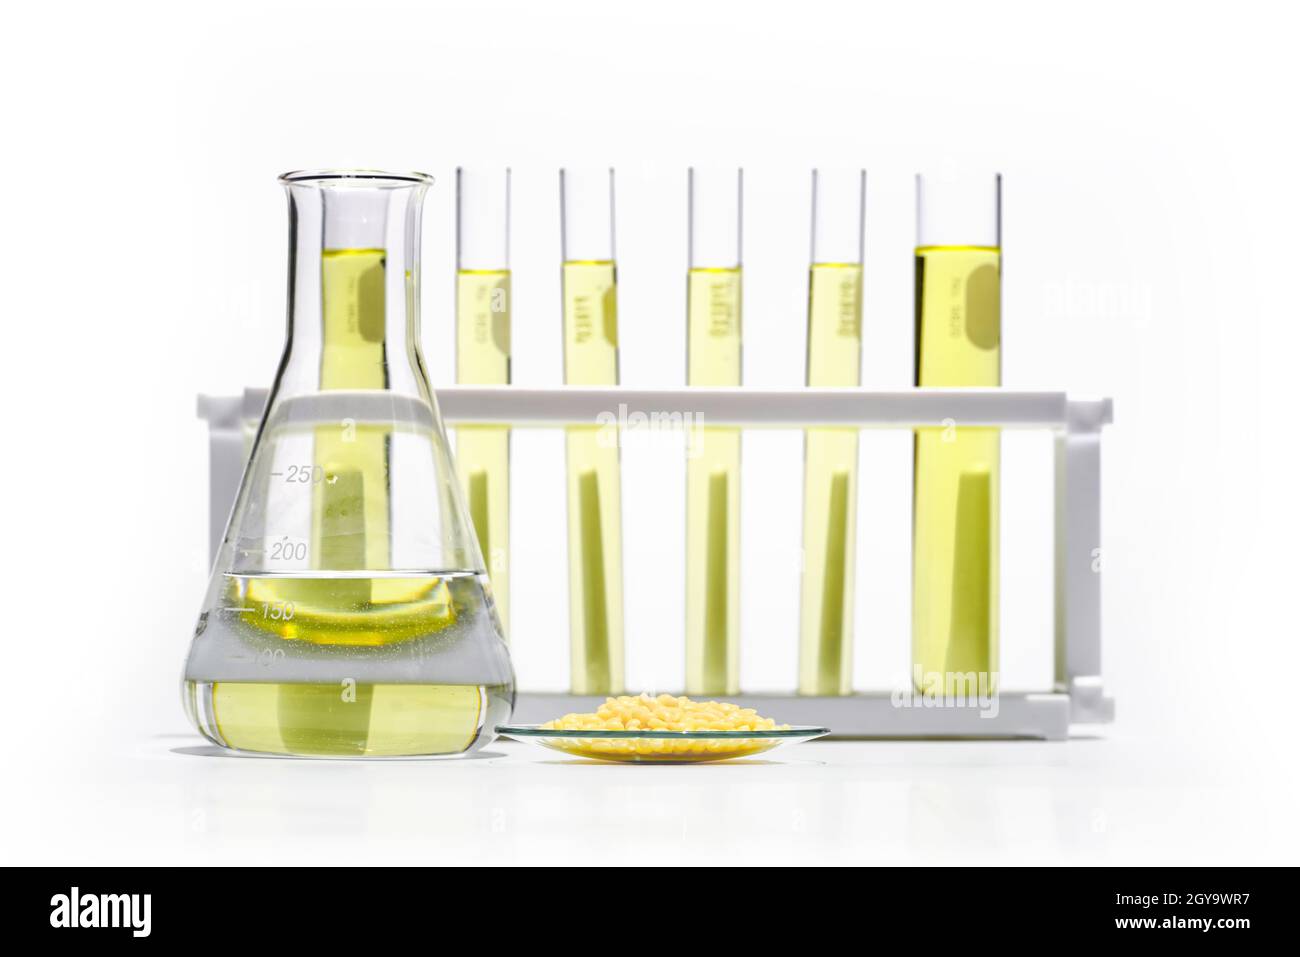 Candelilla-Wachs aus chemischem Uhrglas und gelber kosmetischer Farbe (Öl) im erlenmeyerkolben vor dem Reagenzglasständer. Stockfoto